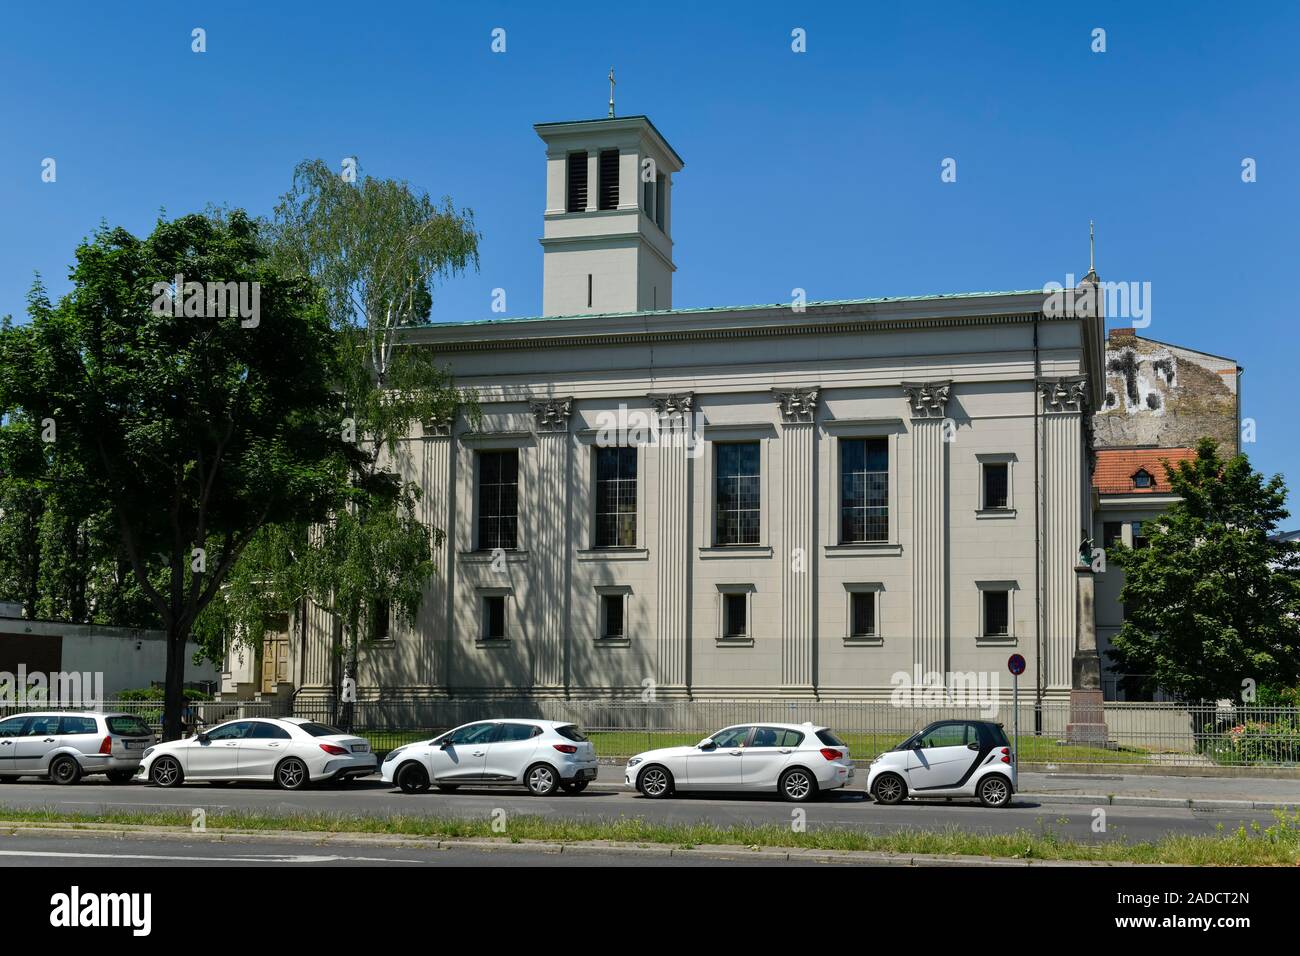 St.-Pauls-Kirche, Badstraße, Gesundbrunnen, Mitte, Berlin, Deutschland Stock Photo